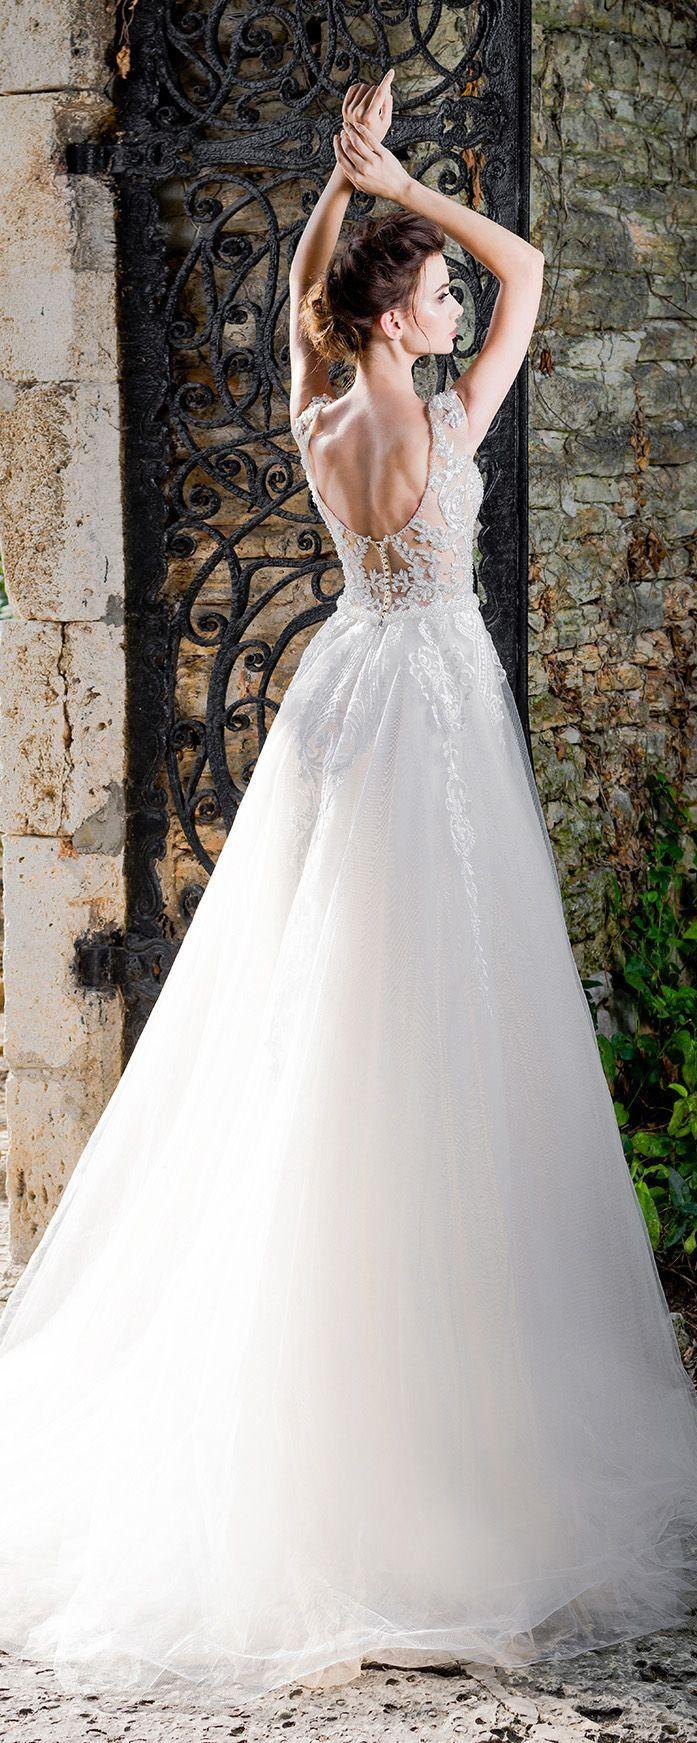 زفاف - Wedding Dress "Anika". #weddings #weddingideas #dresses #weddinginspiration #weddingdress 